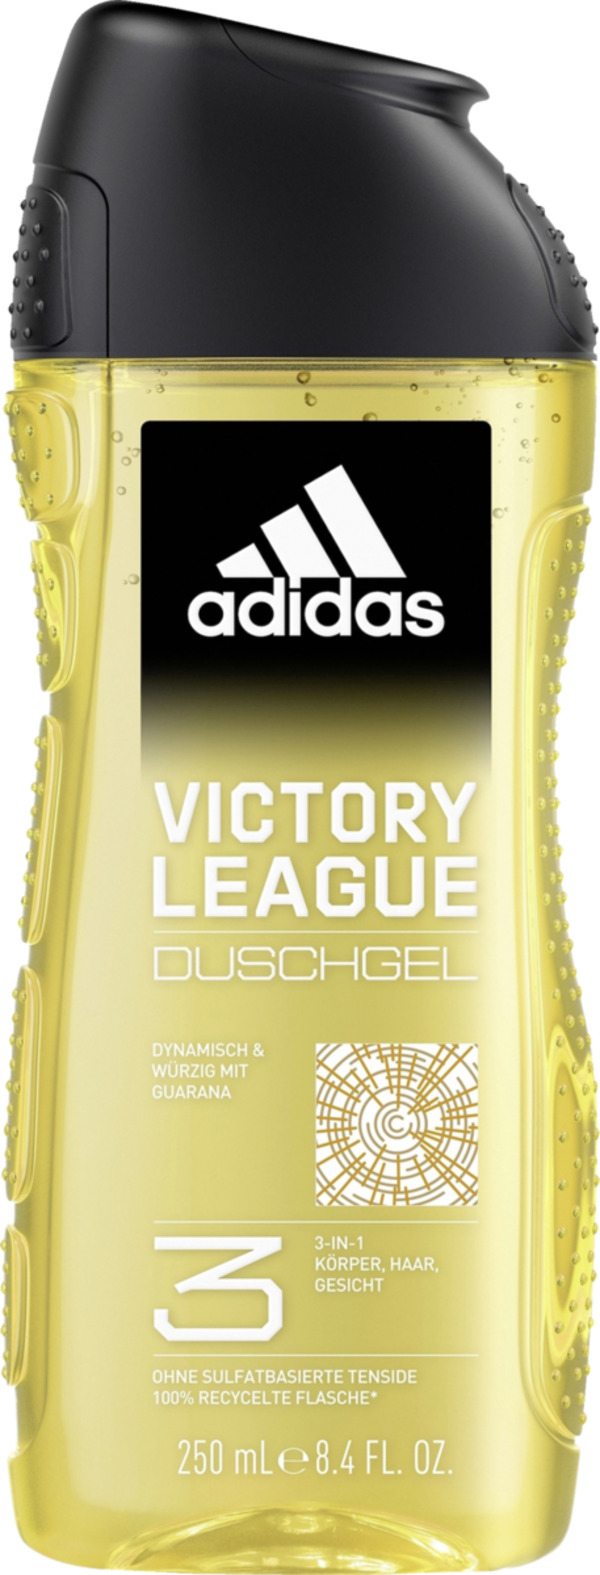 Bild 1 von adidas Victory League 3in1 Duschgel